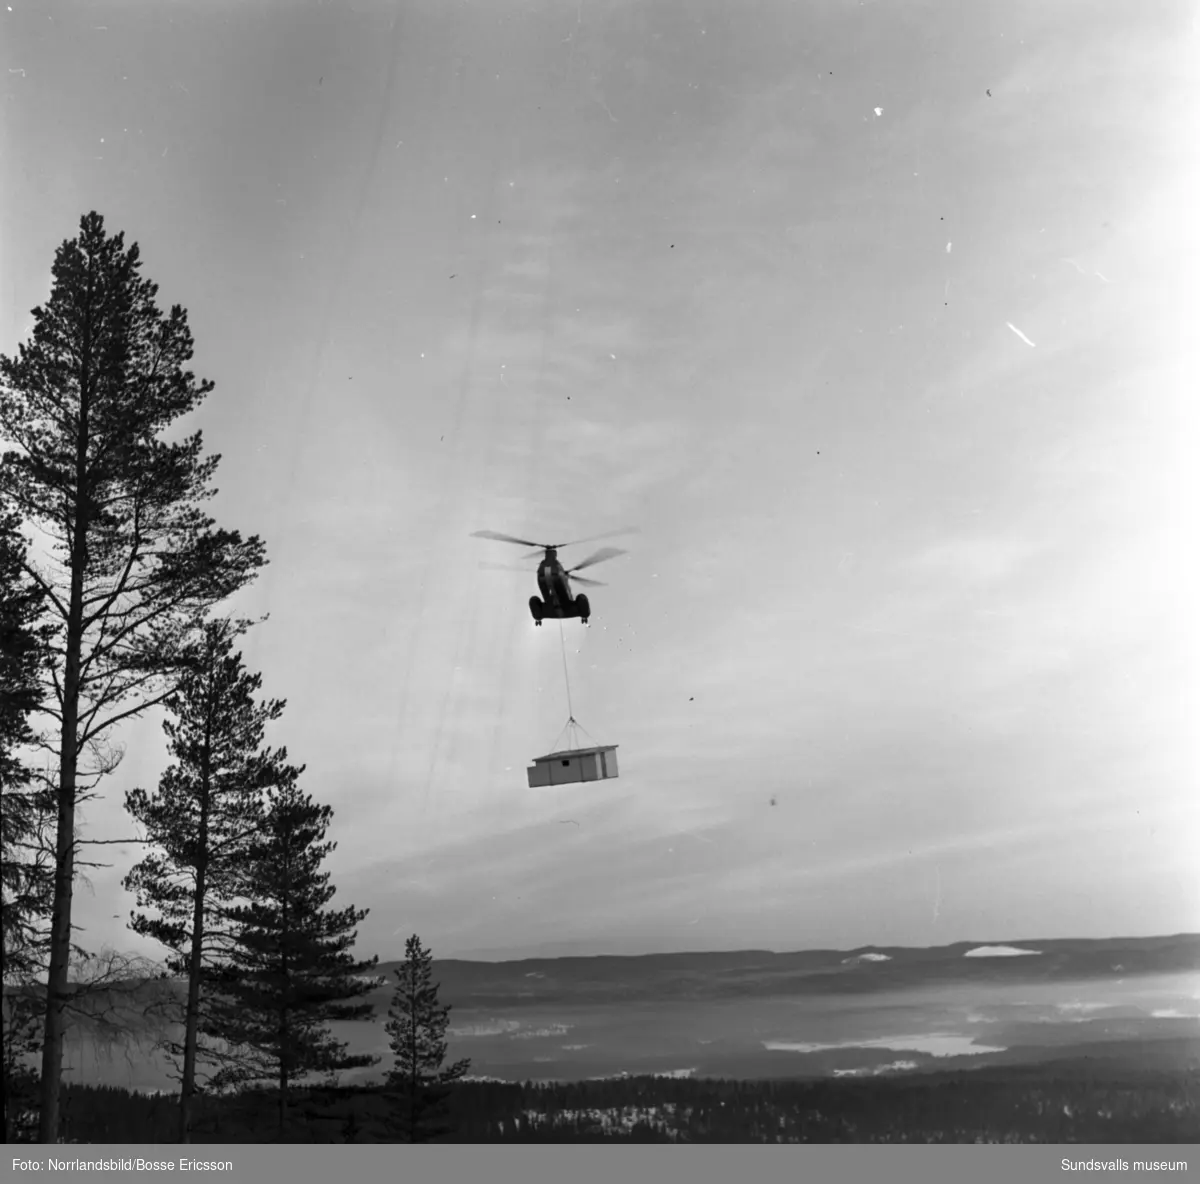 Sportstugelyft med helikopter vid Getberget, Fränsta. Fotograferat för Dagens Nyheter.